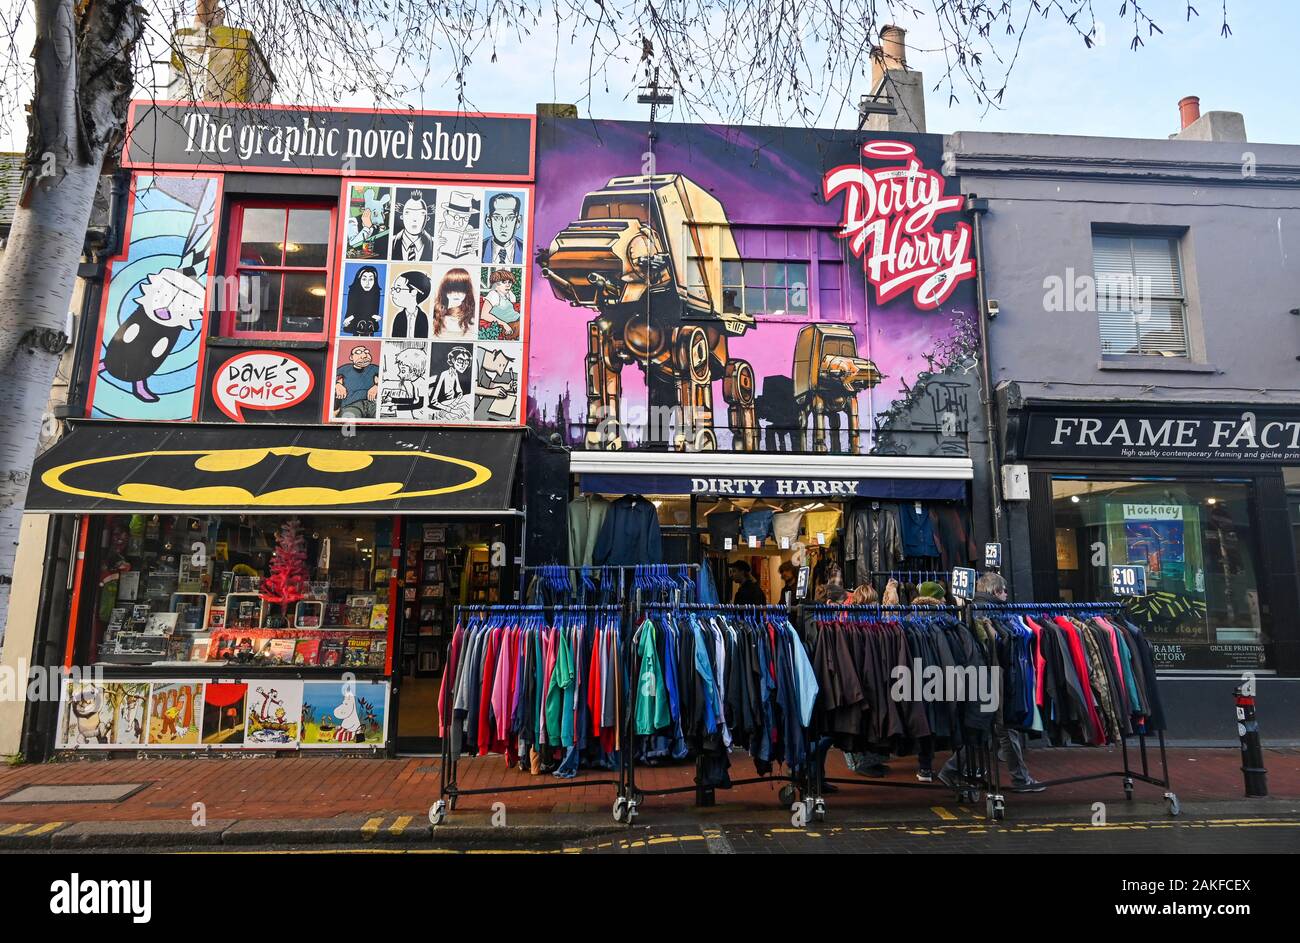 Dirty Harry boutique de moda y la novela gráfica Shop en Sydney Street Brighton que es parte de la Bohemia del Norte de la ciudad de Laine Foto de stock